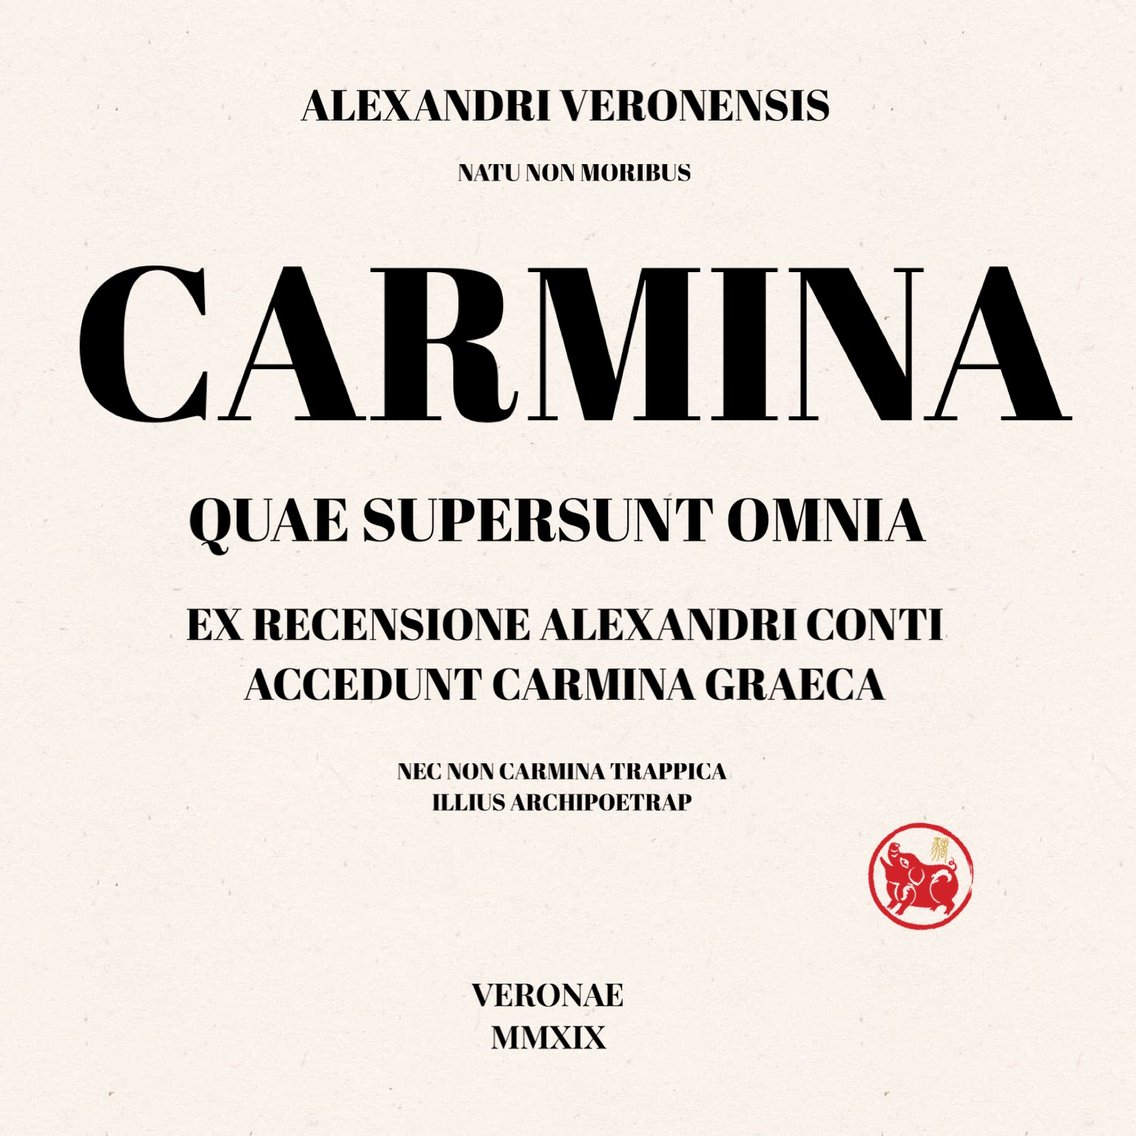 Alexandri Veronensis Carmina quae supersunt omnia - Cover Image